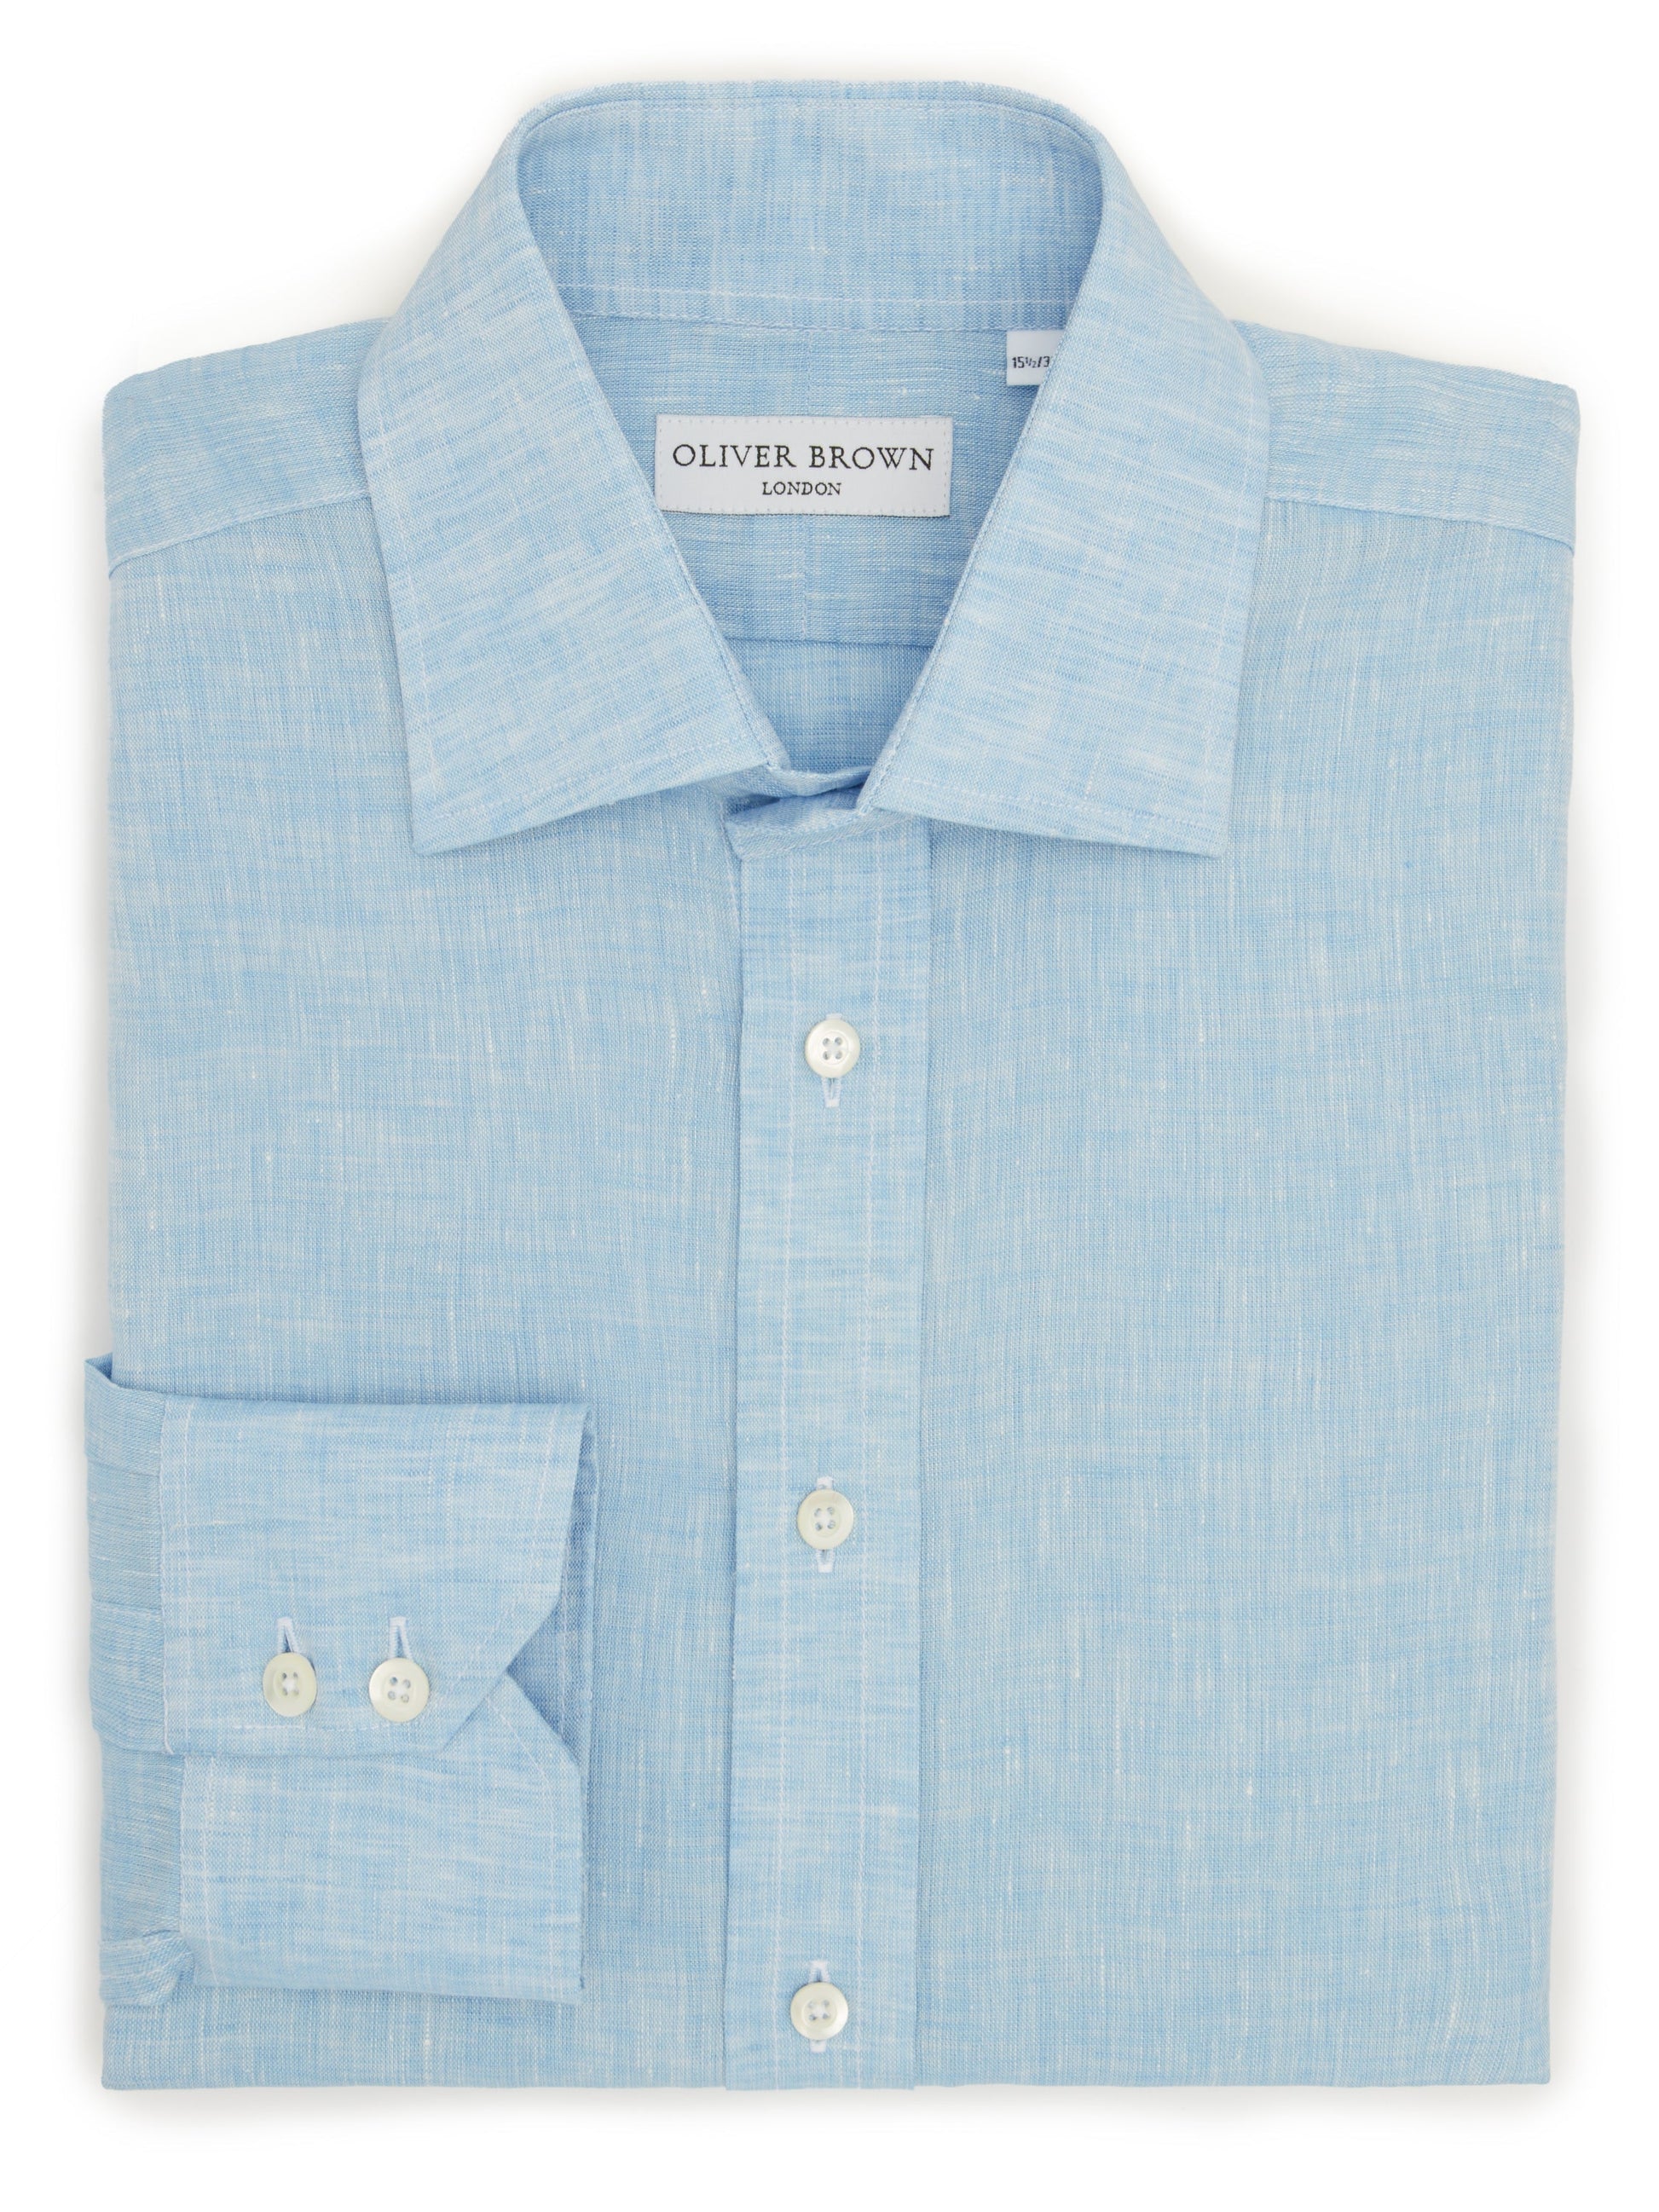 organic linen shirt sky blue 1 1